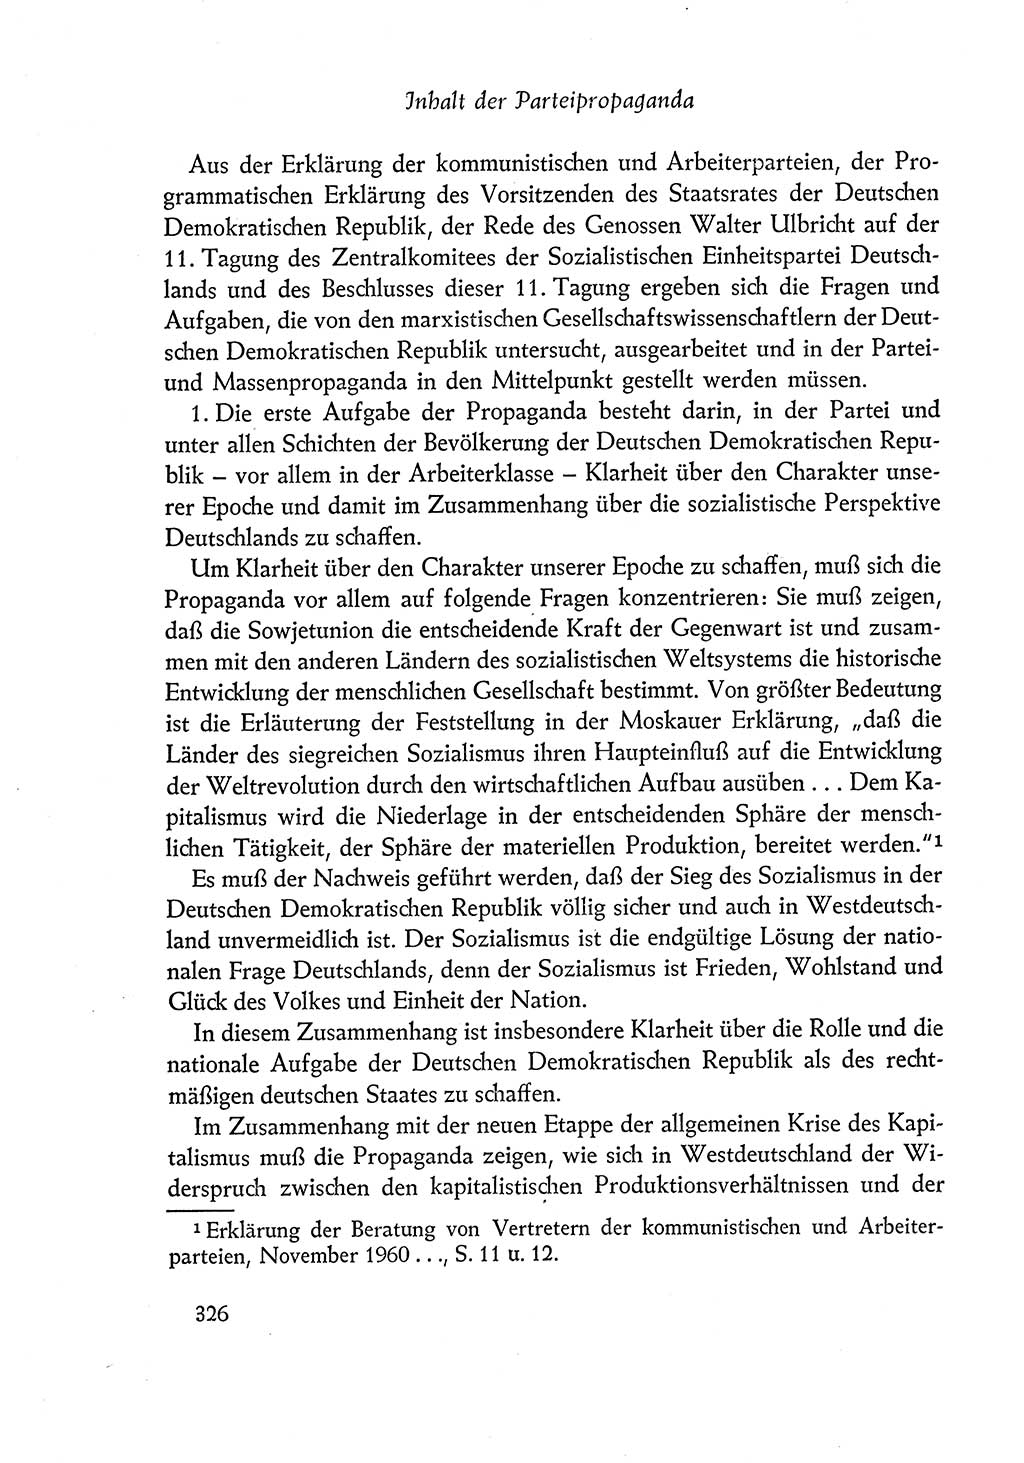 Dokumente der Sozialistischen Einheitspartei Deutschlands (SED) [Deutsche Demokratische Republik (DDR)] 1960-1961, Seite 326 (Dok. SED DDR 1960-1961, S. 326)